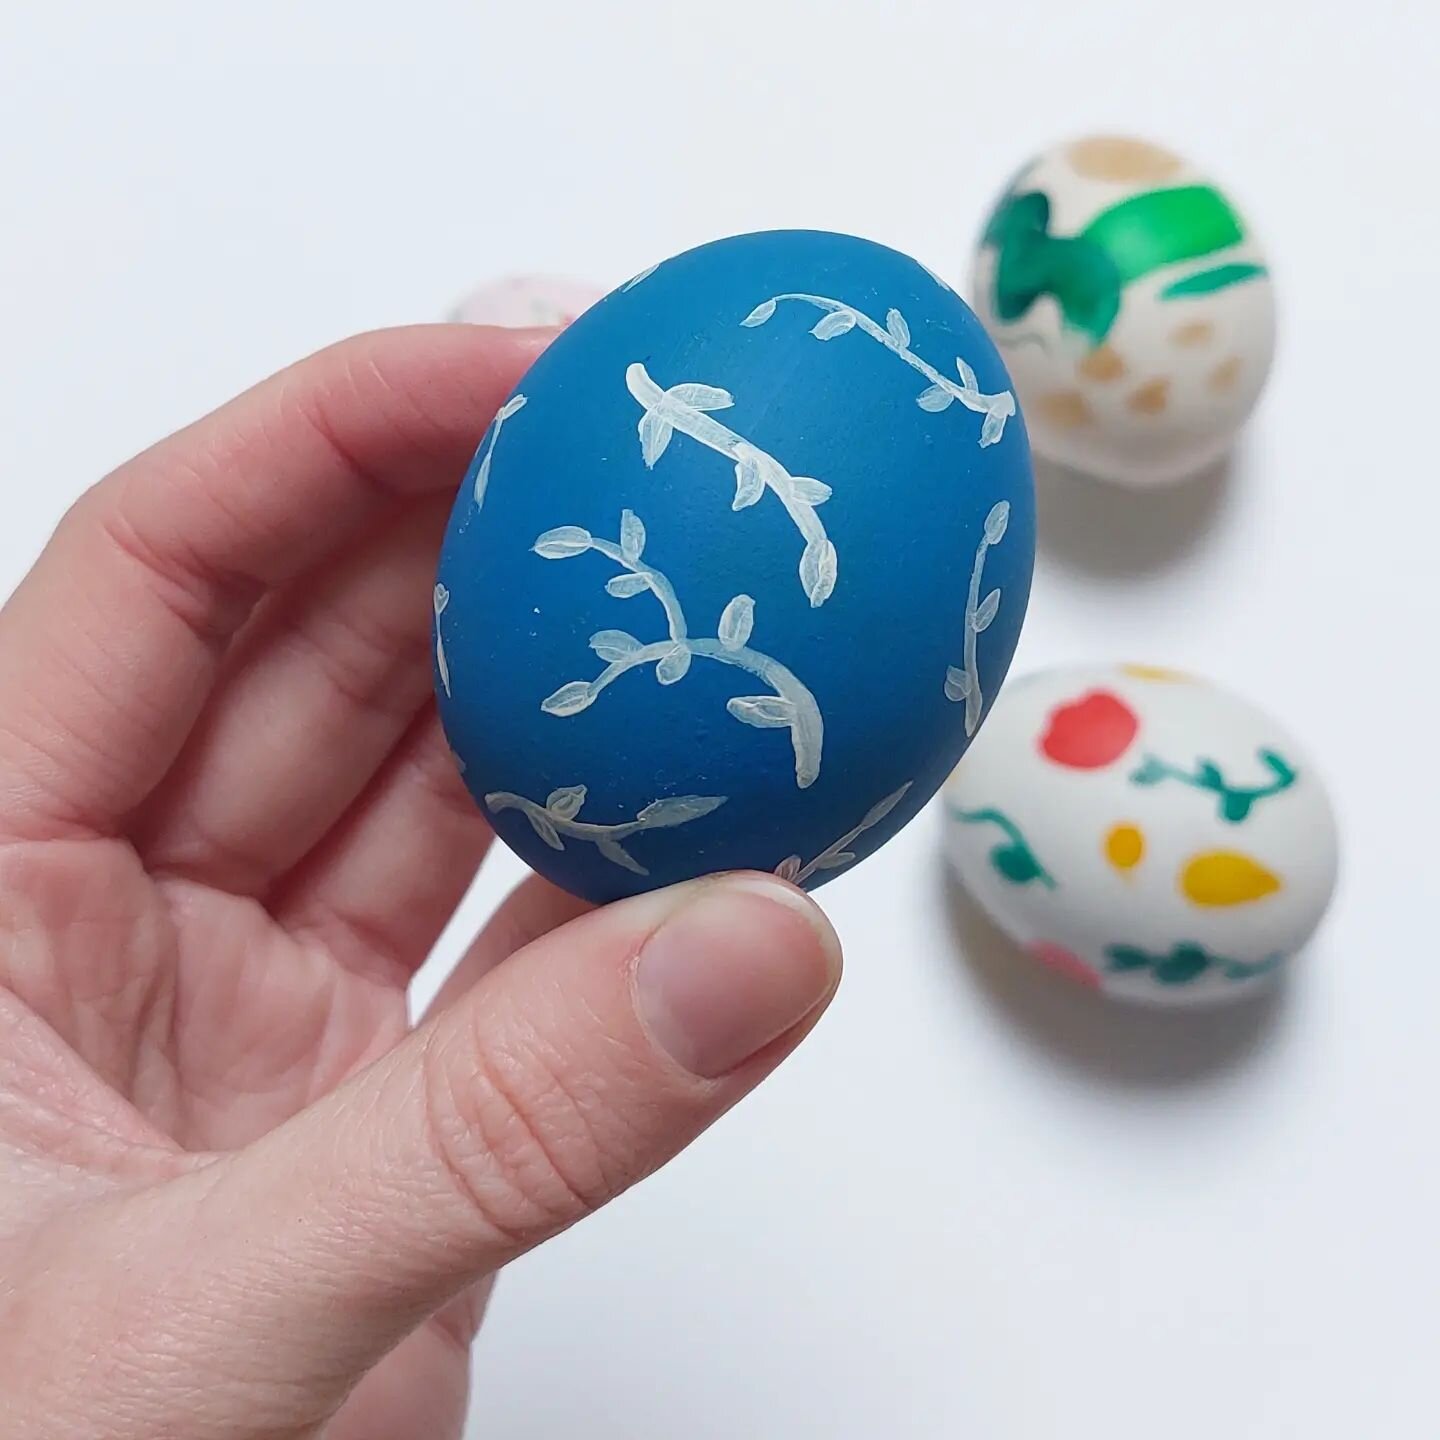 Fijne Pasen⚘️🪺
Hoop dat iedereen kan genieten van lekkere paaseitjes en paasactiviteiten. Mijn paas traditie is om eitjes te schilderen. Wat doe jij tijdens de paasdagen? 🪺

#paasdecoratie #pasen #pasen2023 #easter #eastereggs #egg #eggpainting #eg